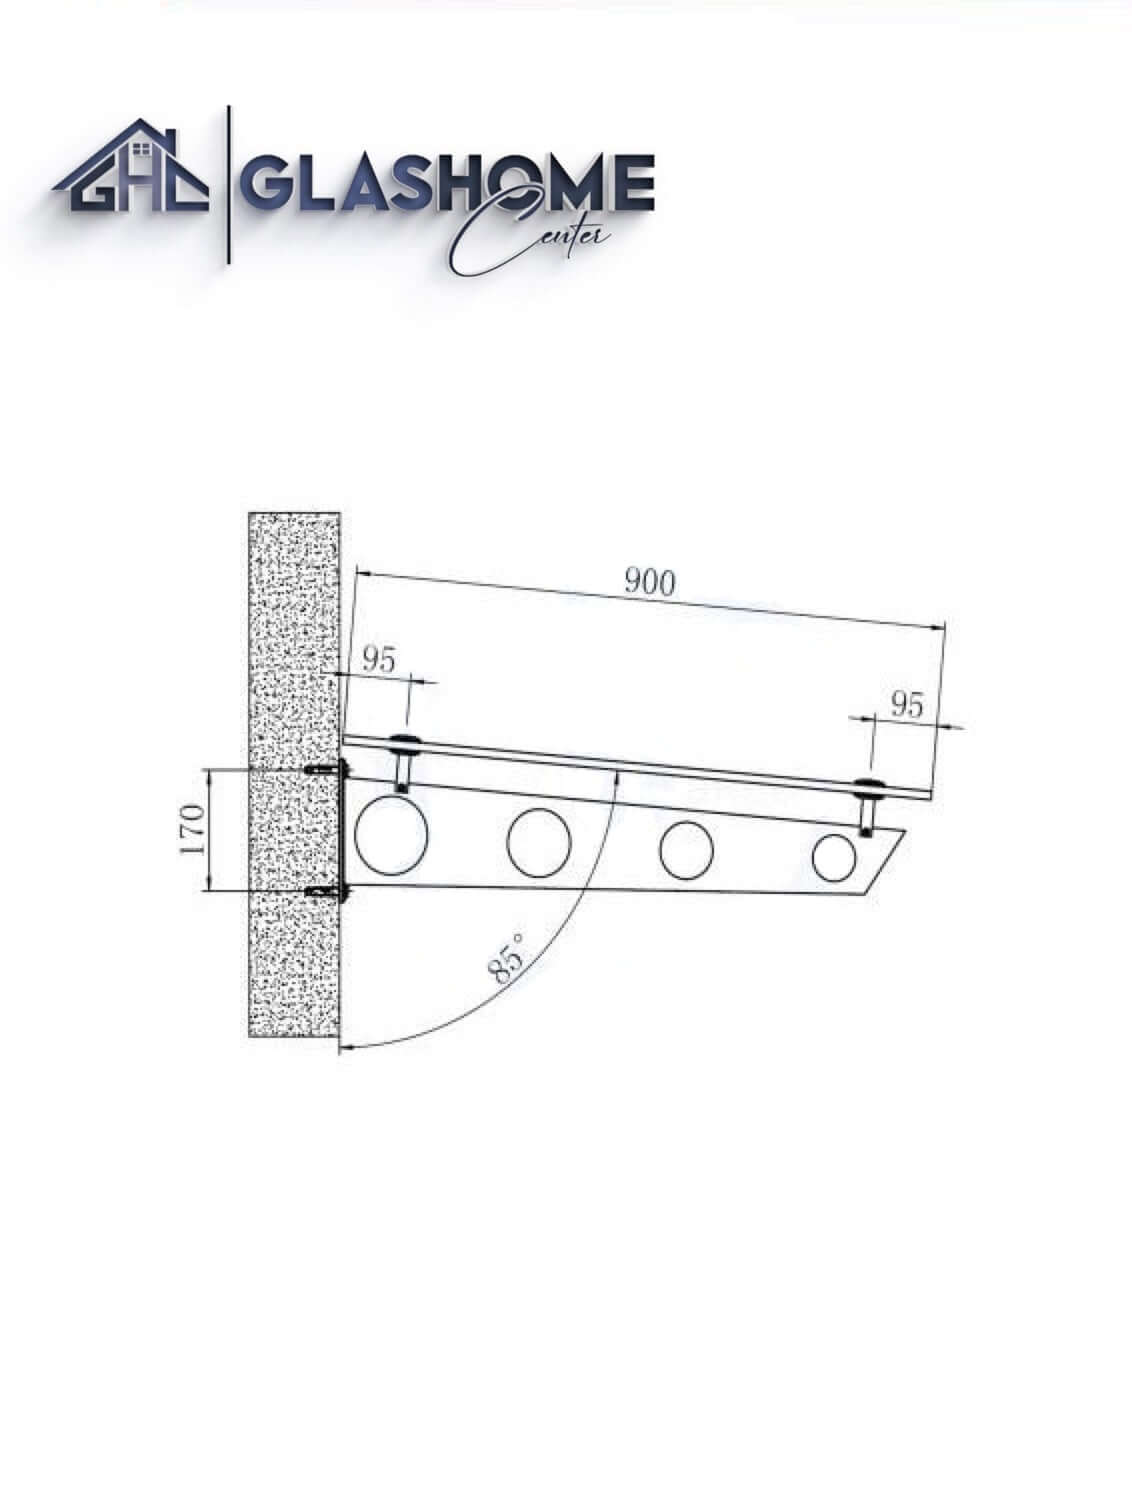 GlasHomeCenter - baldacchino in vetro - vetro trasparente - 180x90 cm - vetro di sicurezza stratificato 13,1 mm - incl.2 staffe in acciaio inox nero variante "Stoccolma"